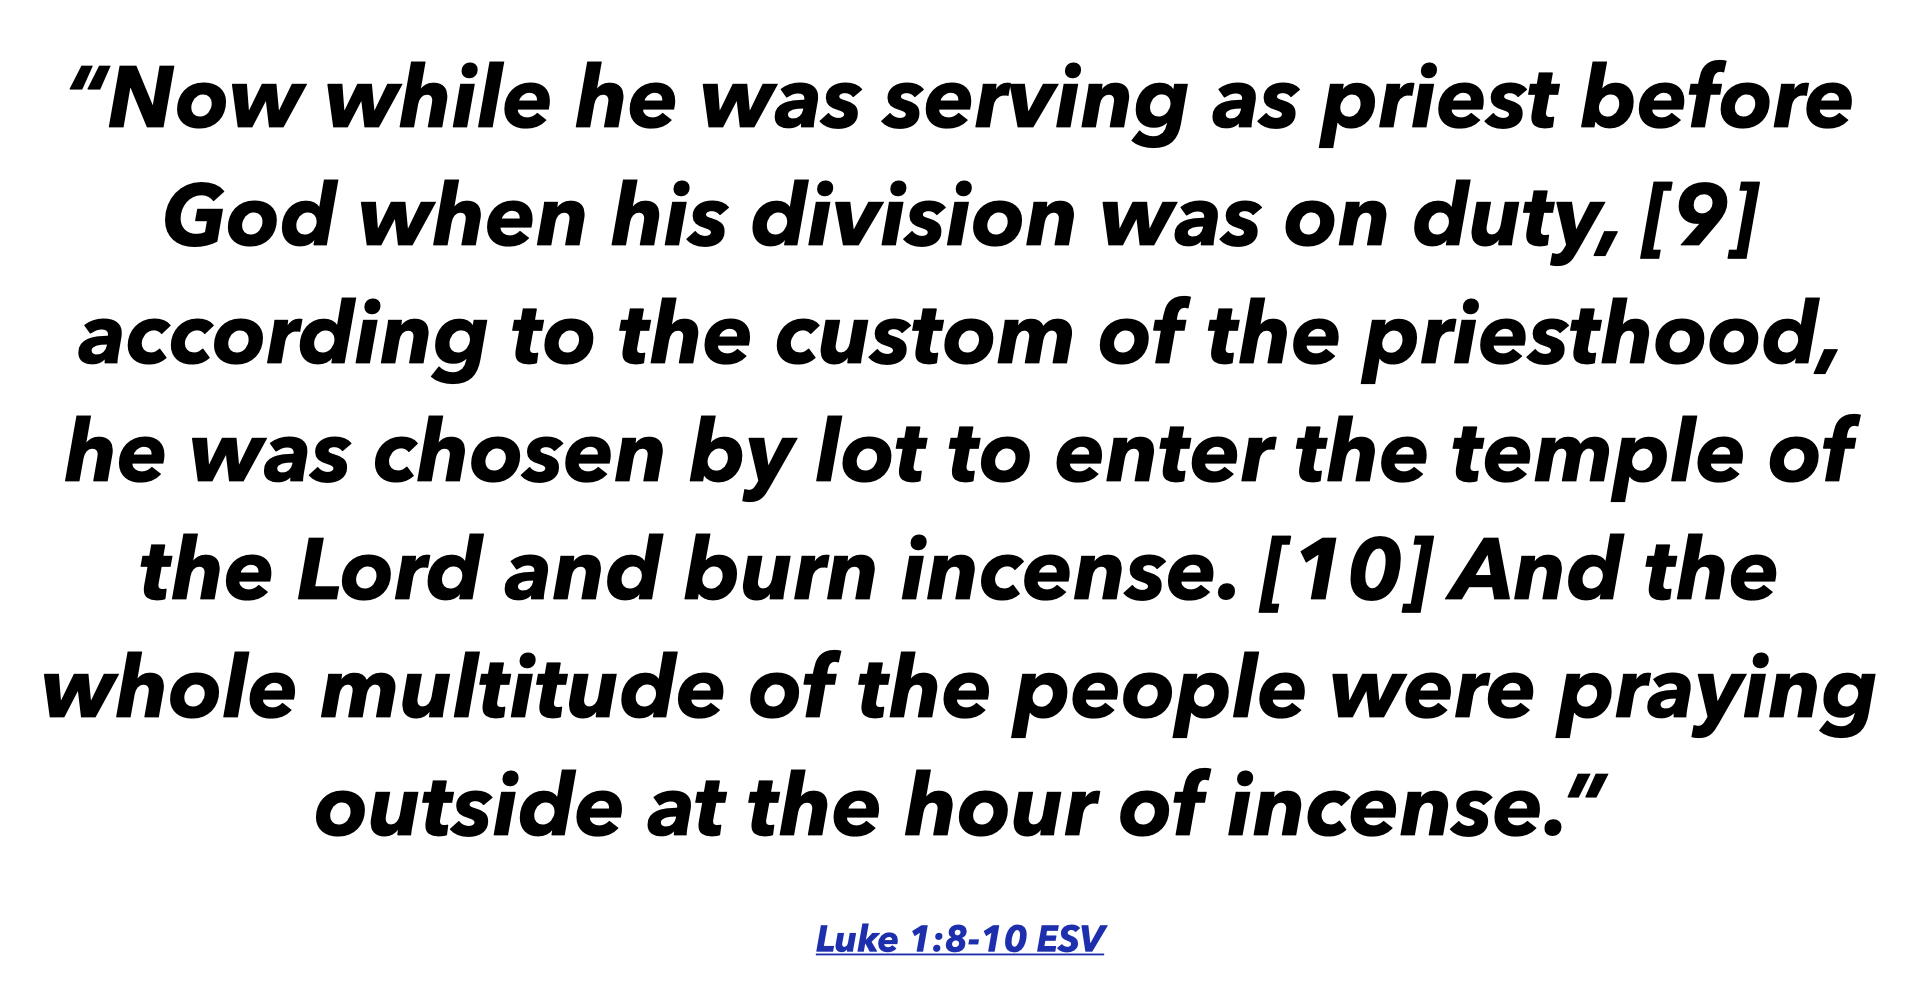 Luke 1: 8-10